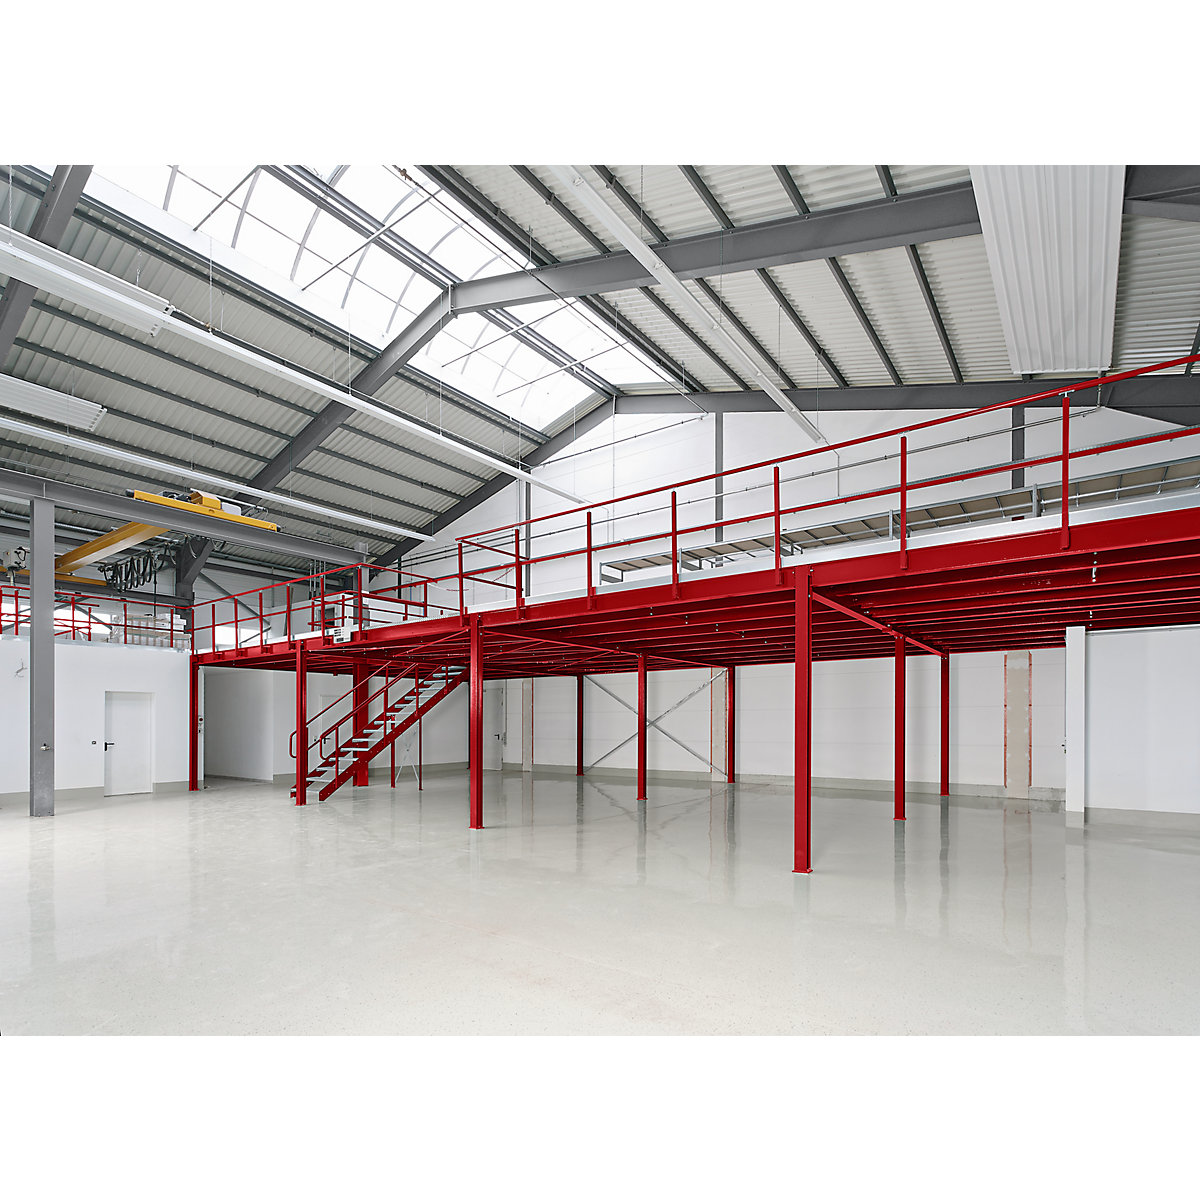 Raktári emelvény, bővítő mező, felületi terhelhetőség 350 kg/m², oszloprács 5000 x 3000 mm